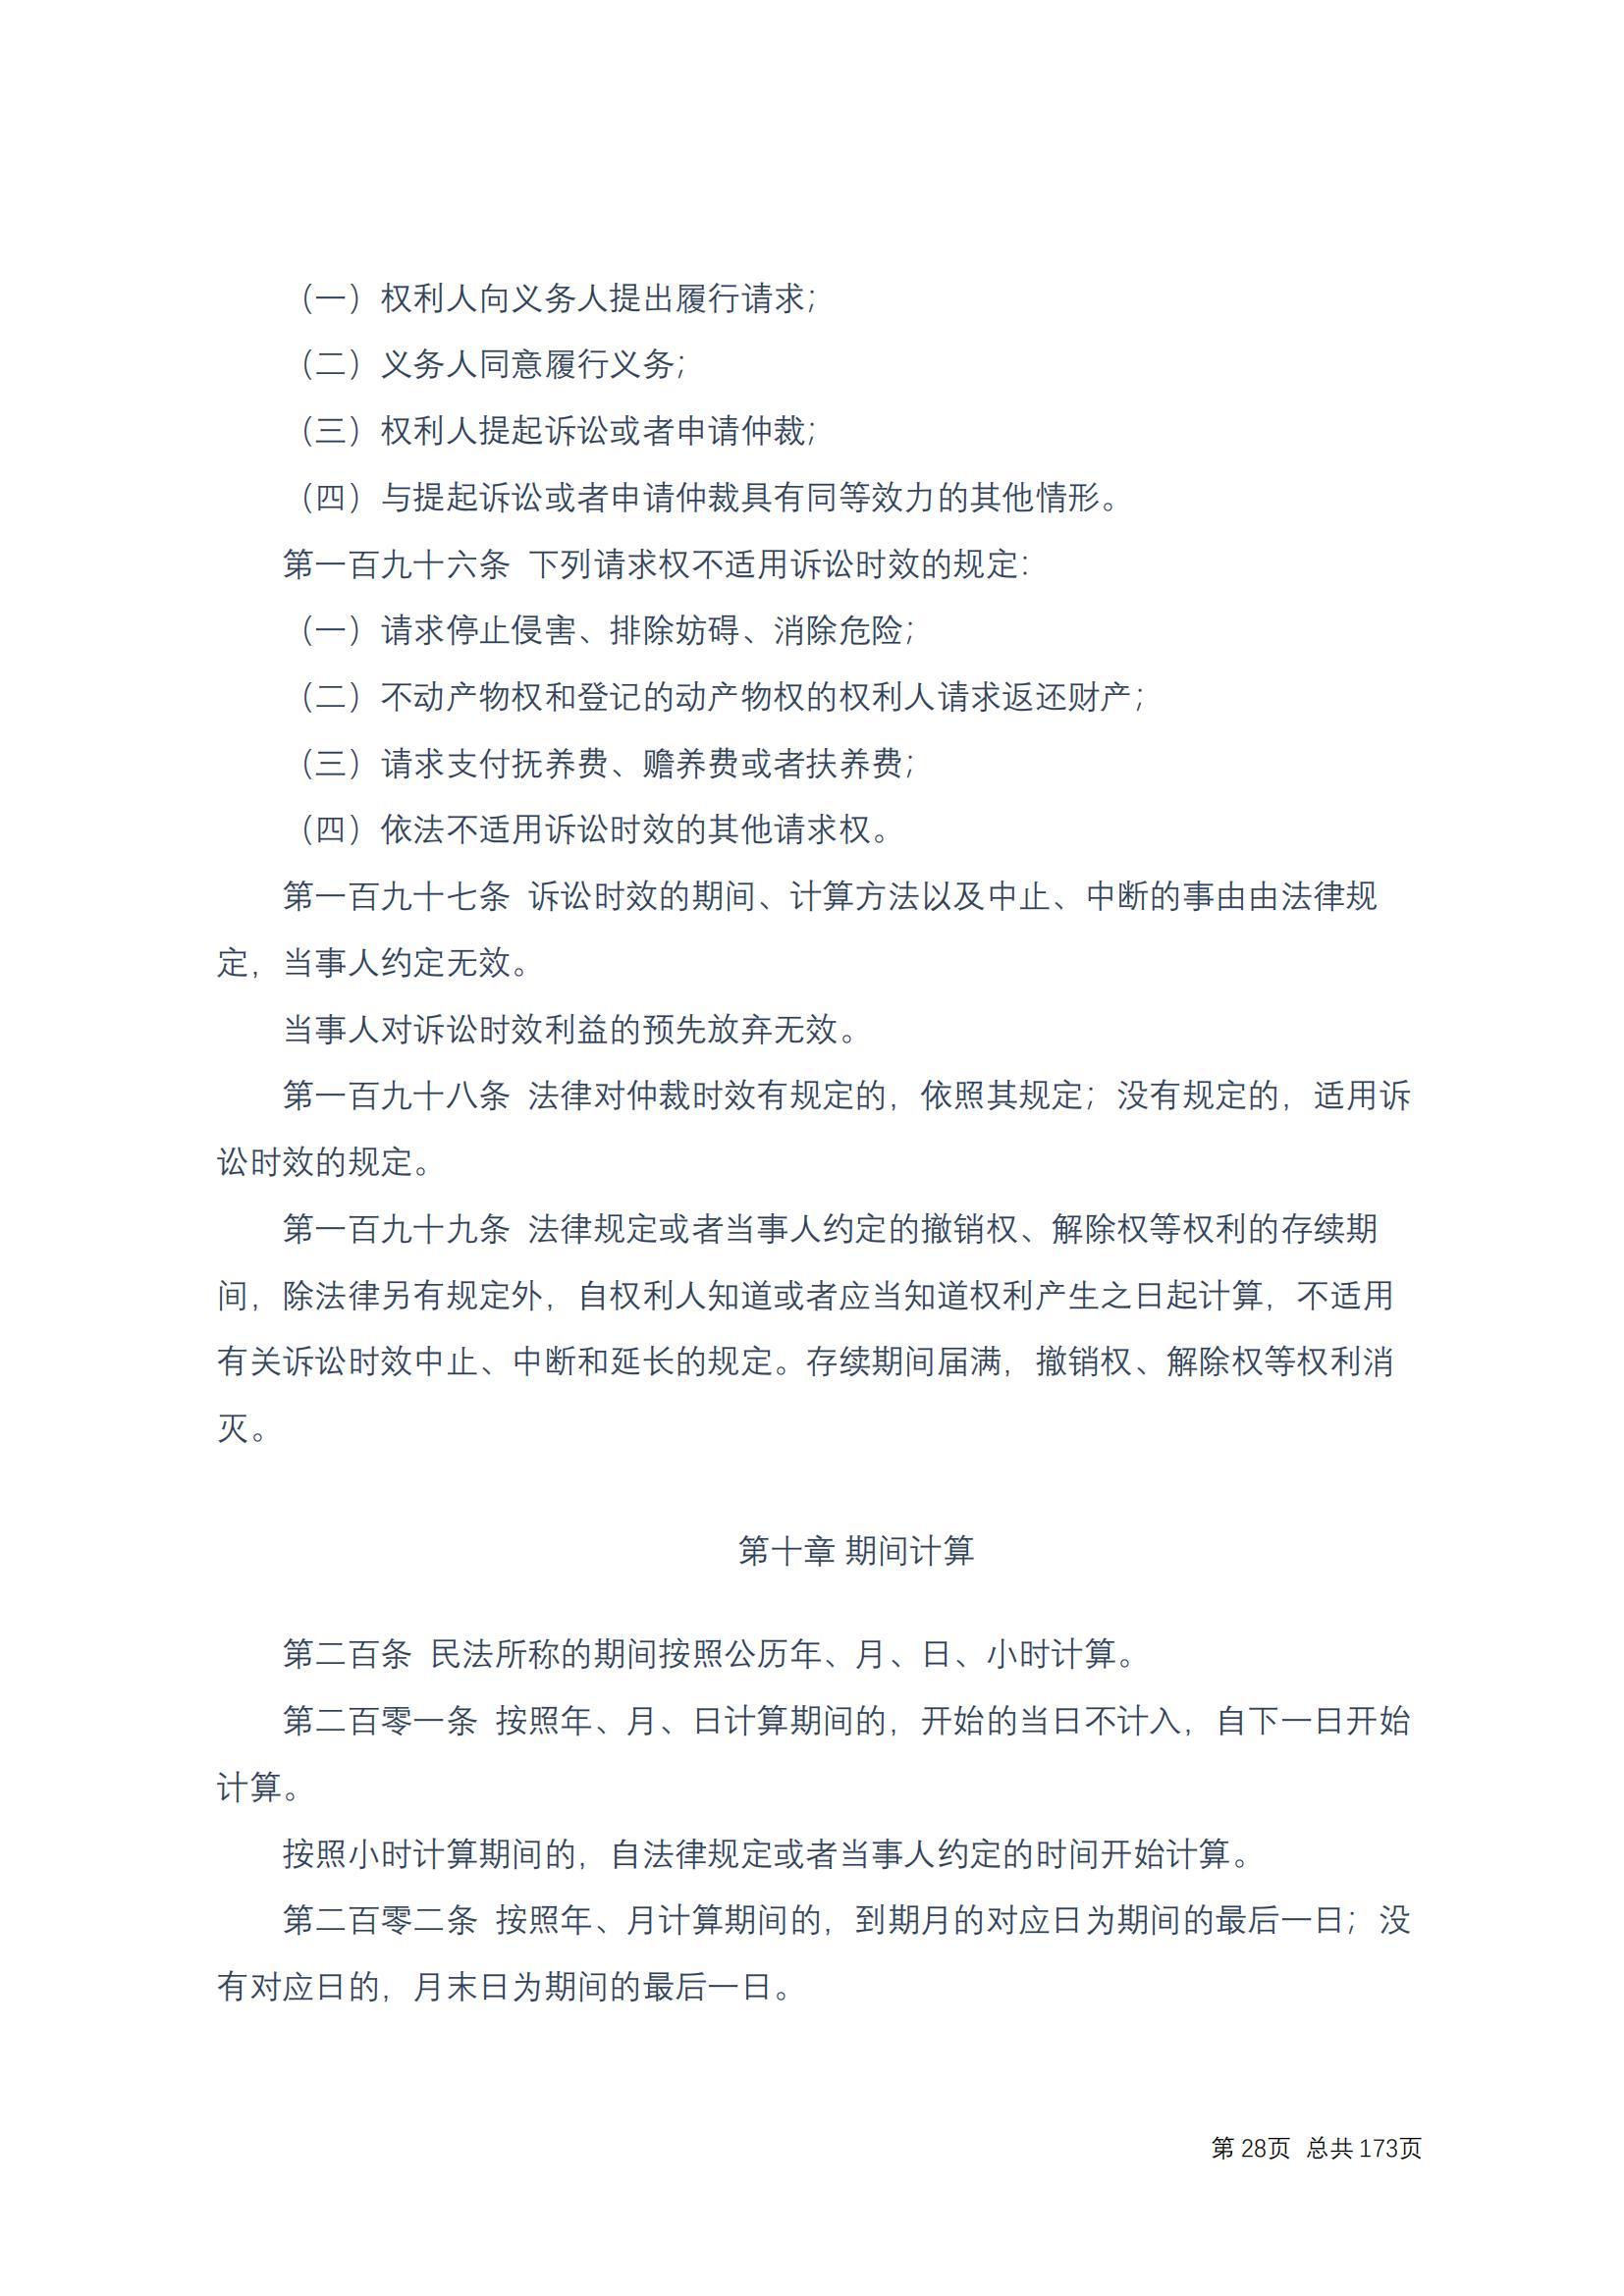 中华人民共和国民法典 修改过_27